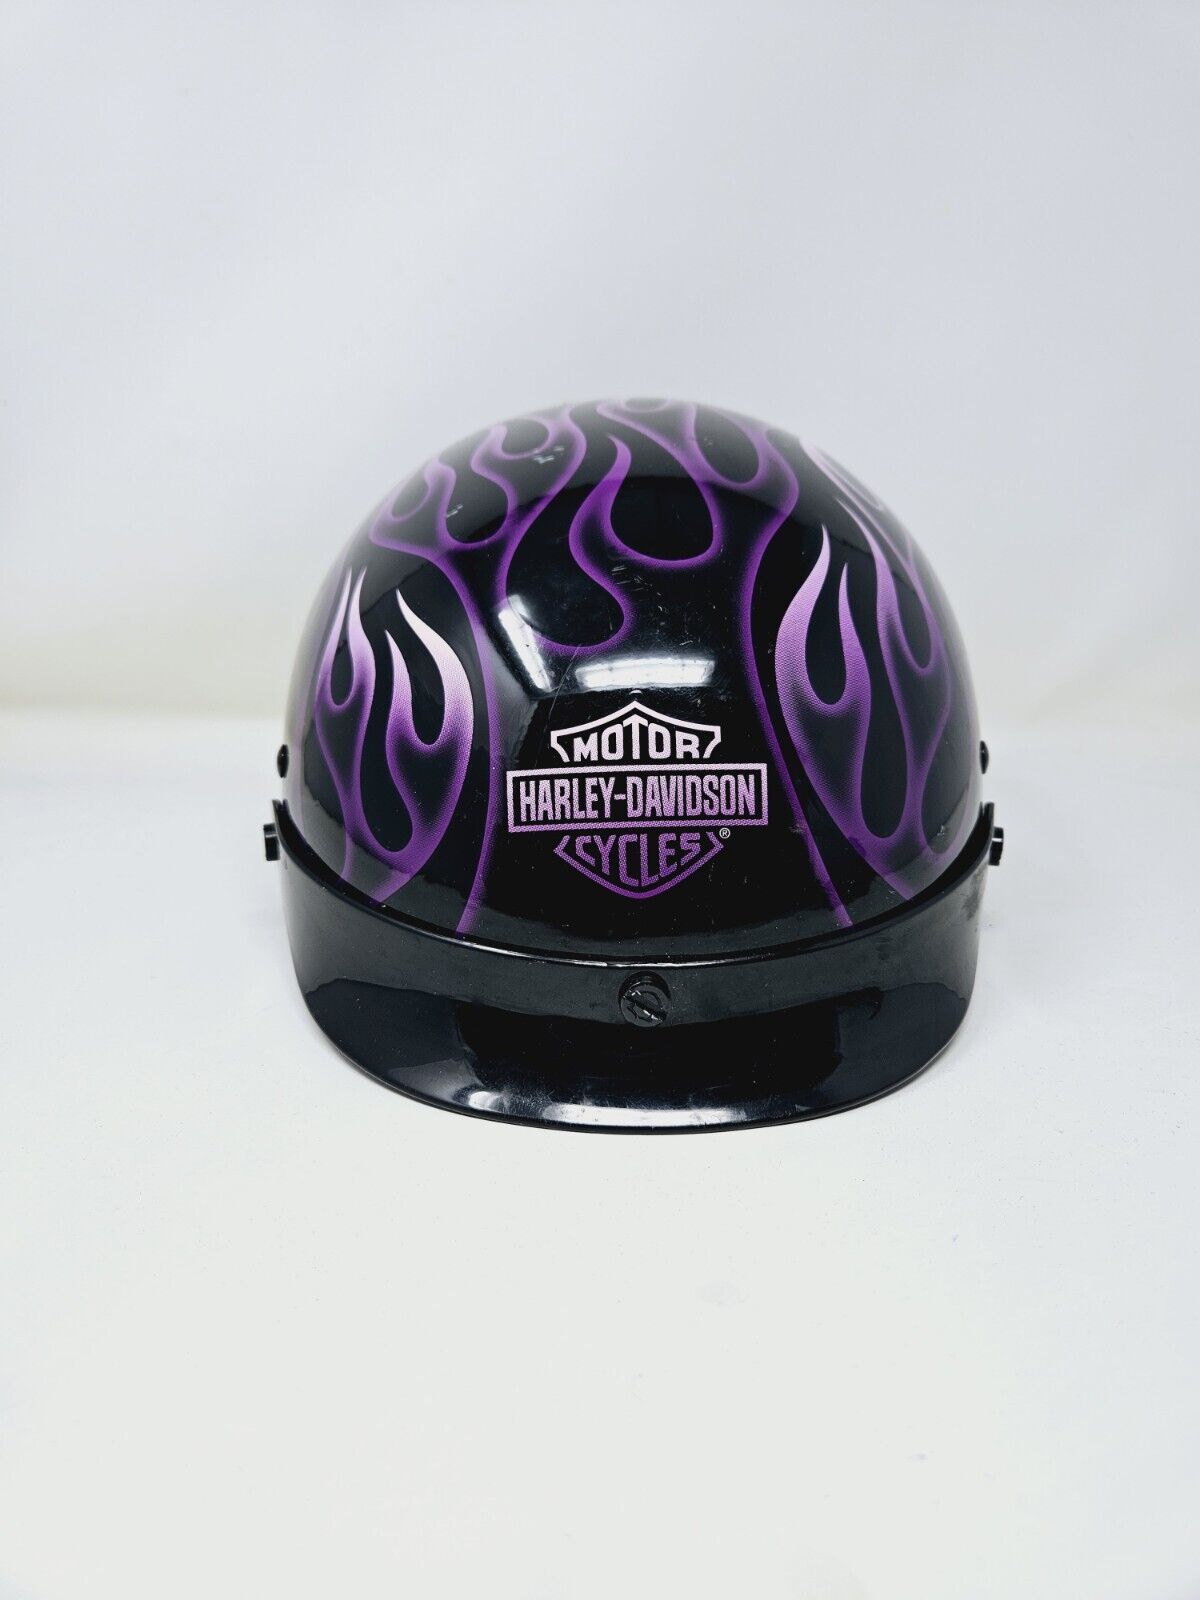 00s Harley Davidson Vintage Purple Black Flame Large Motorcycle Helmet Used